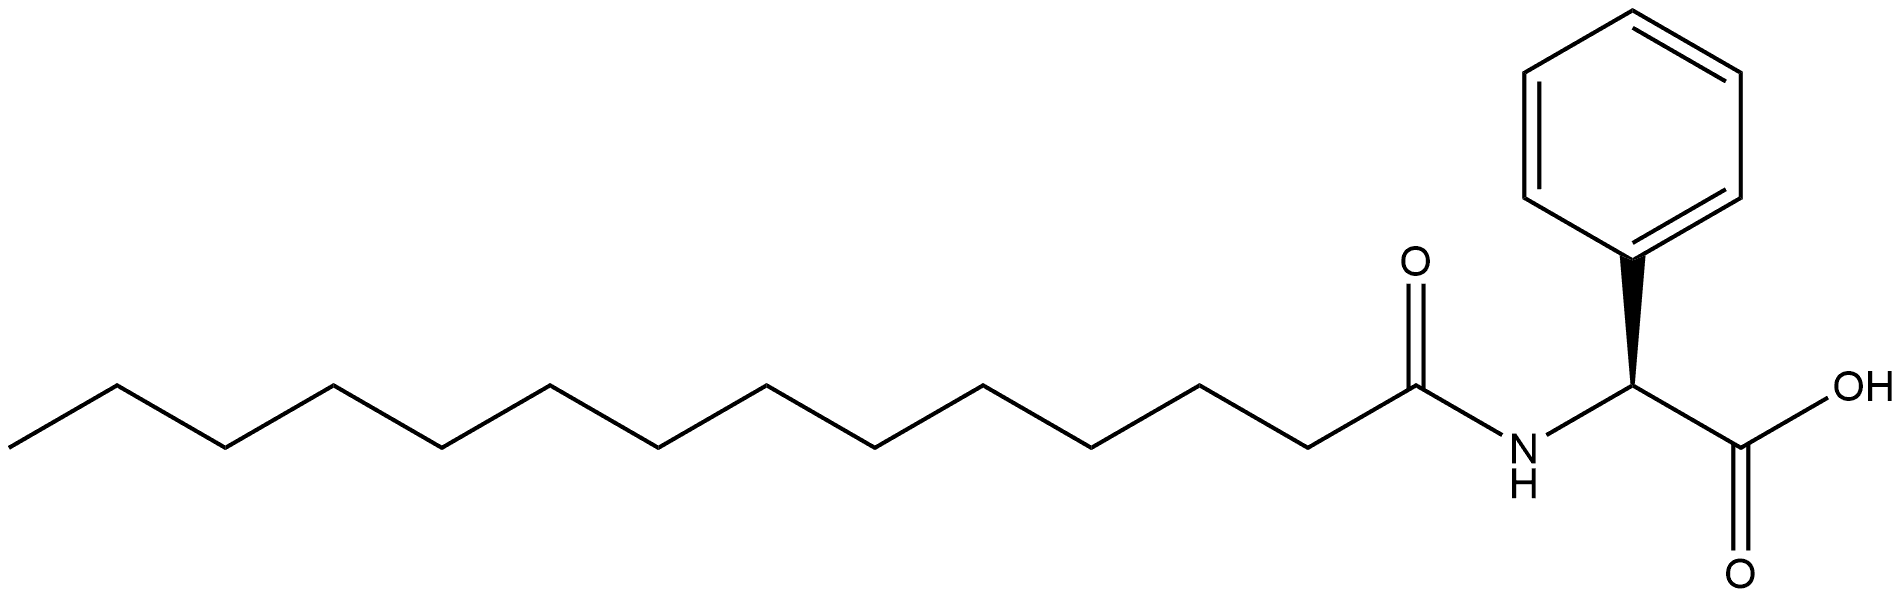 N-Butadecanoyl-L-phenylglycine